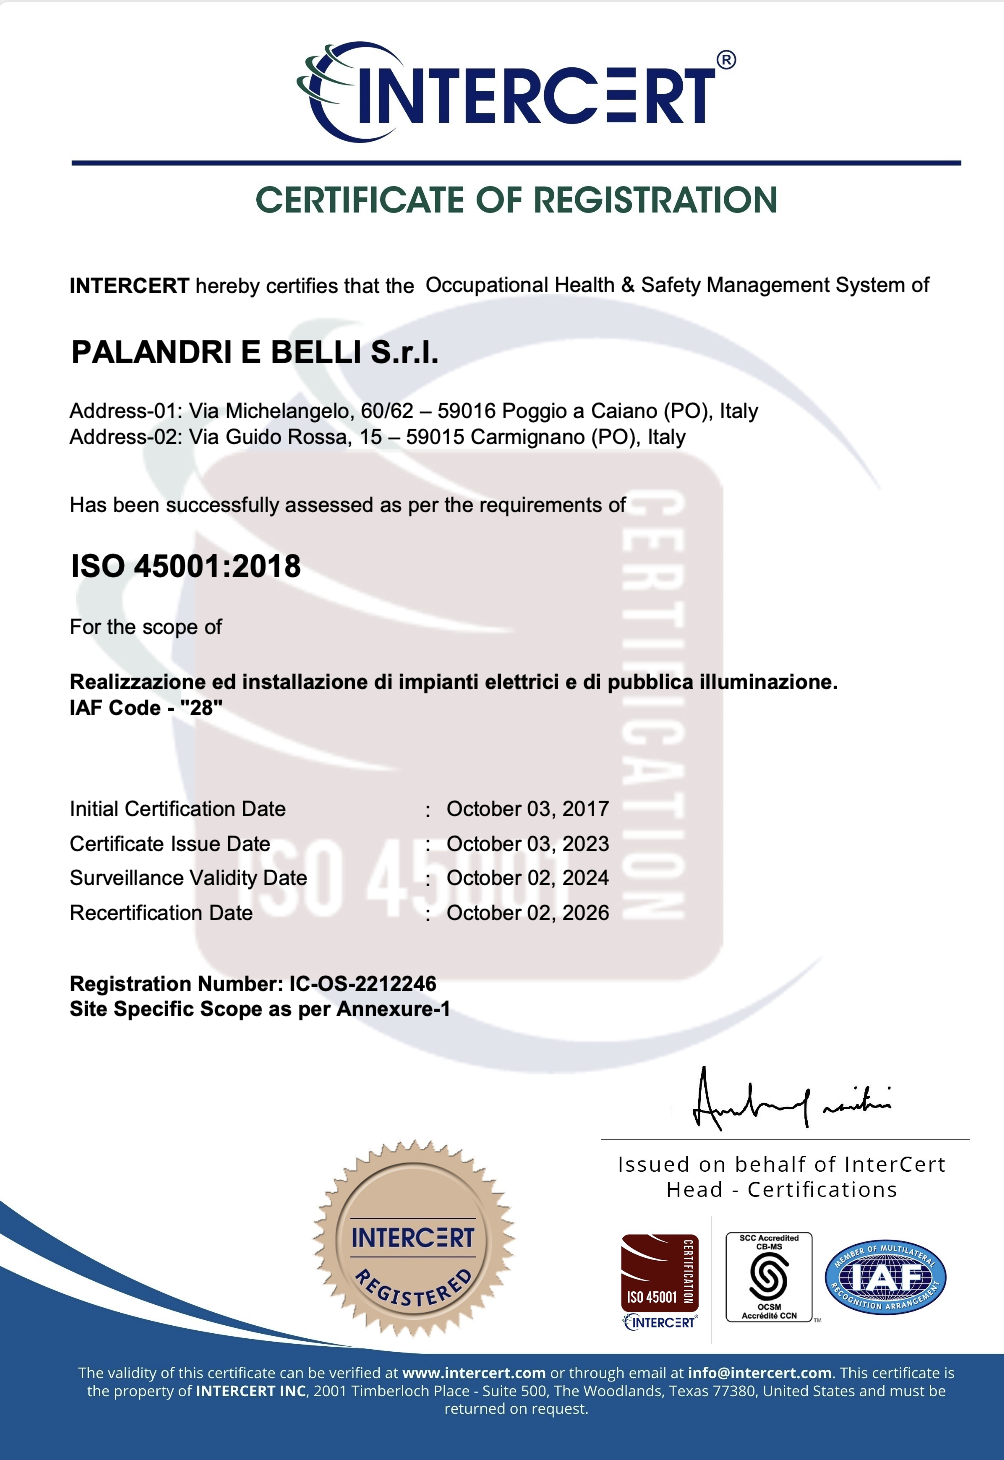 UNI EN ISO 45001 Palandri E Belli